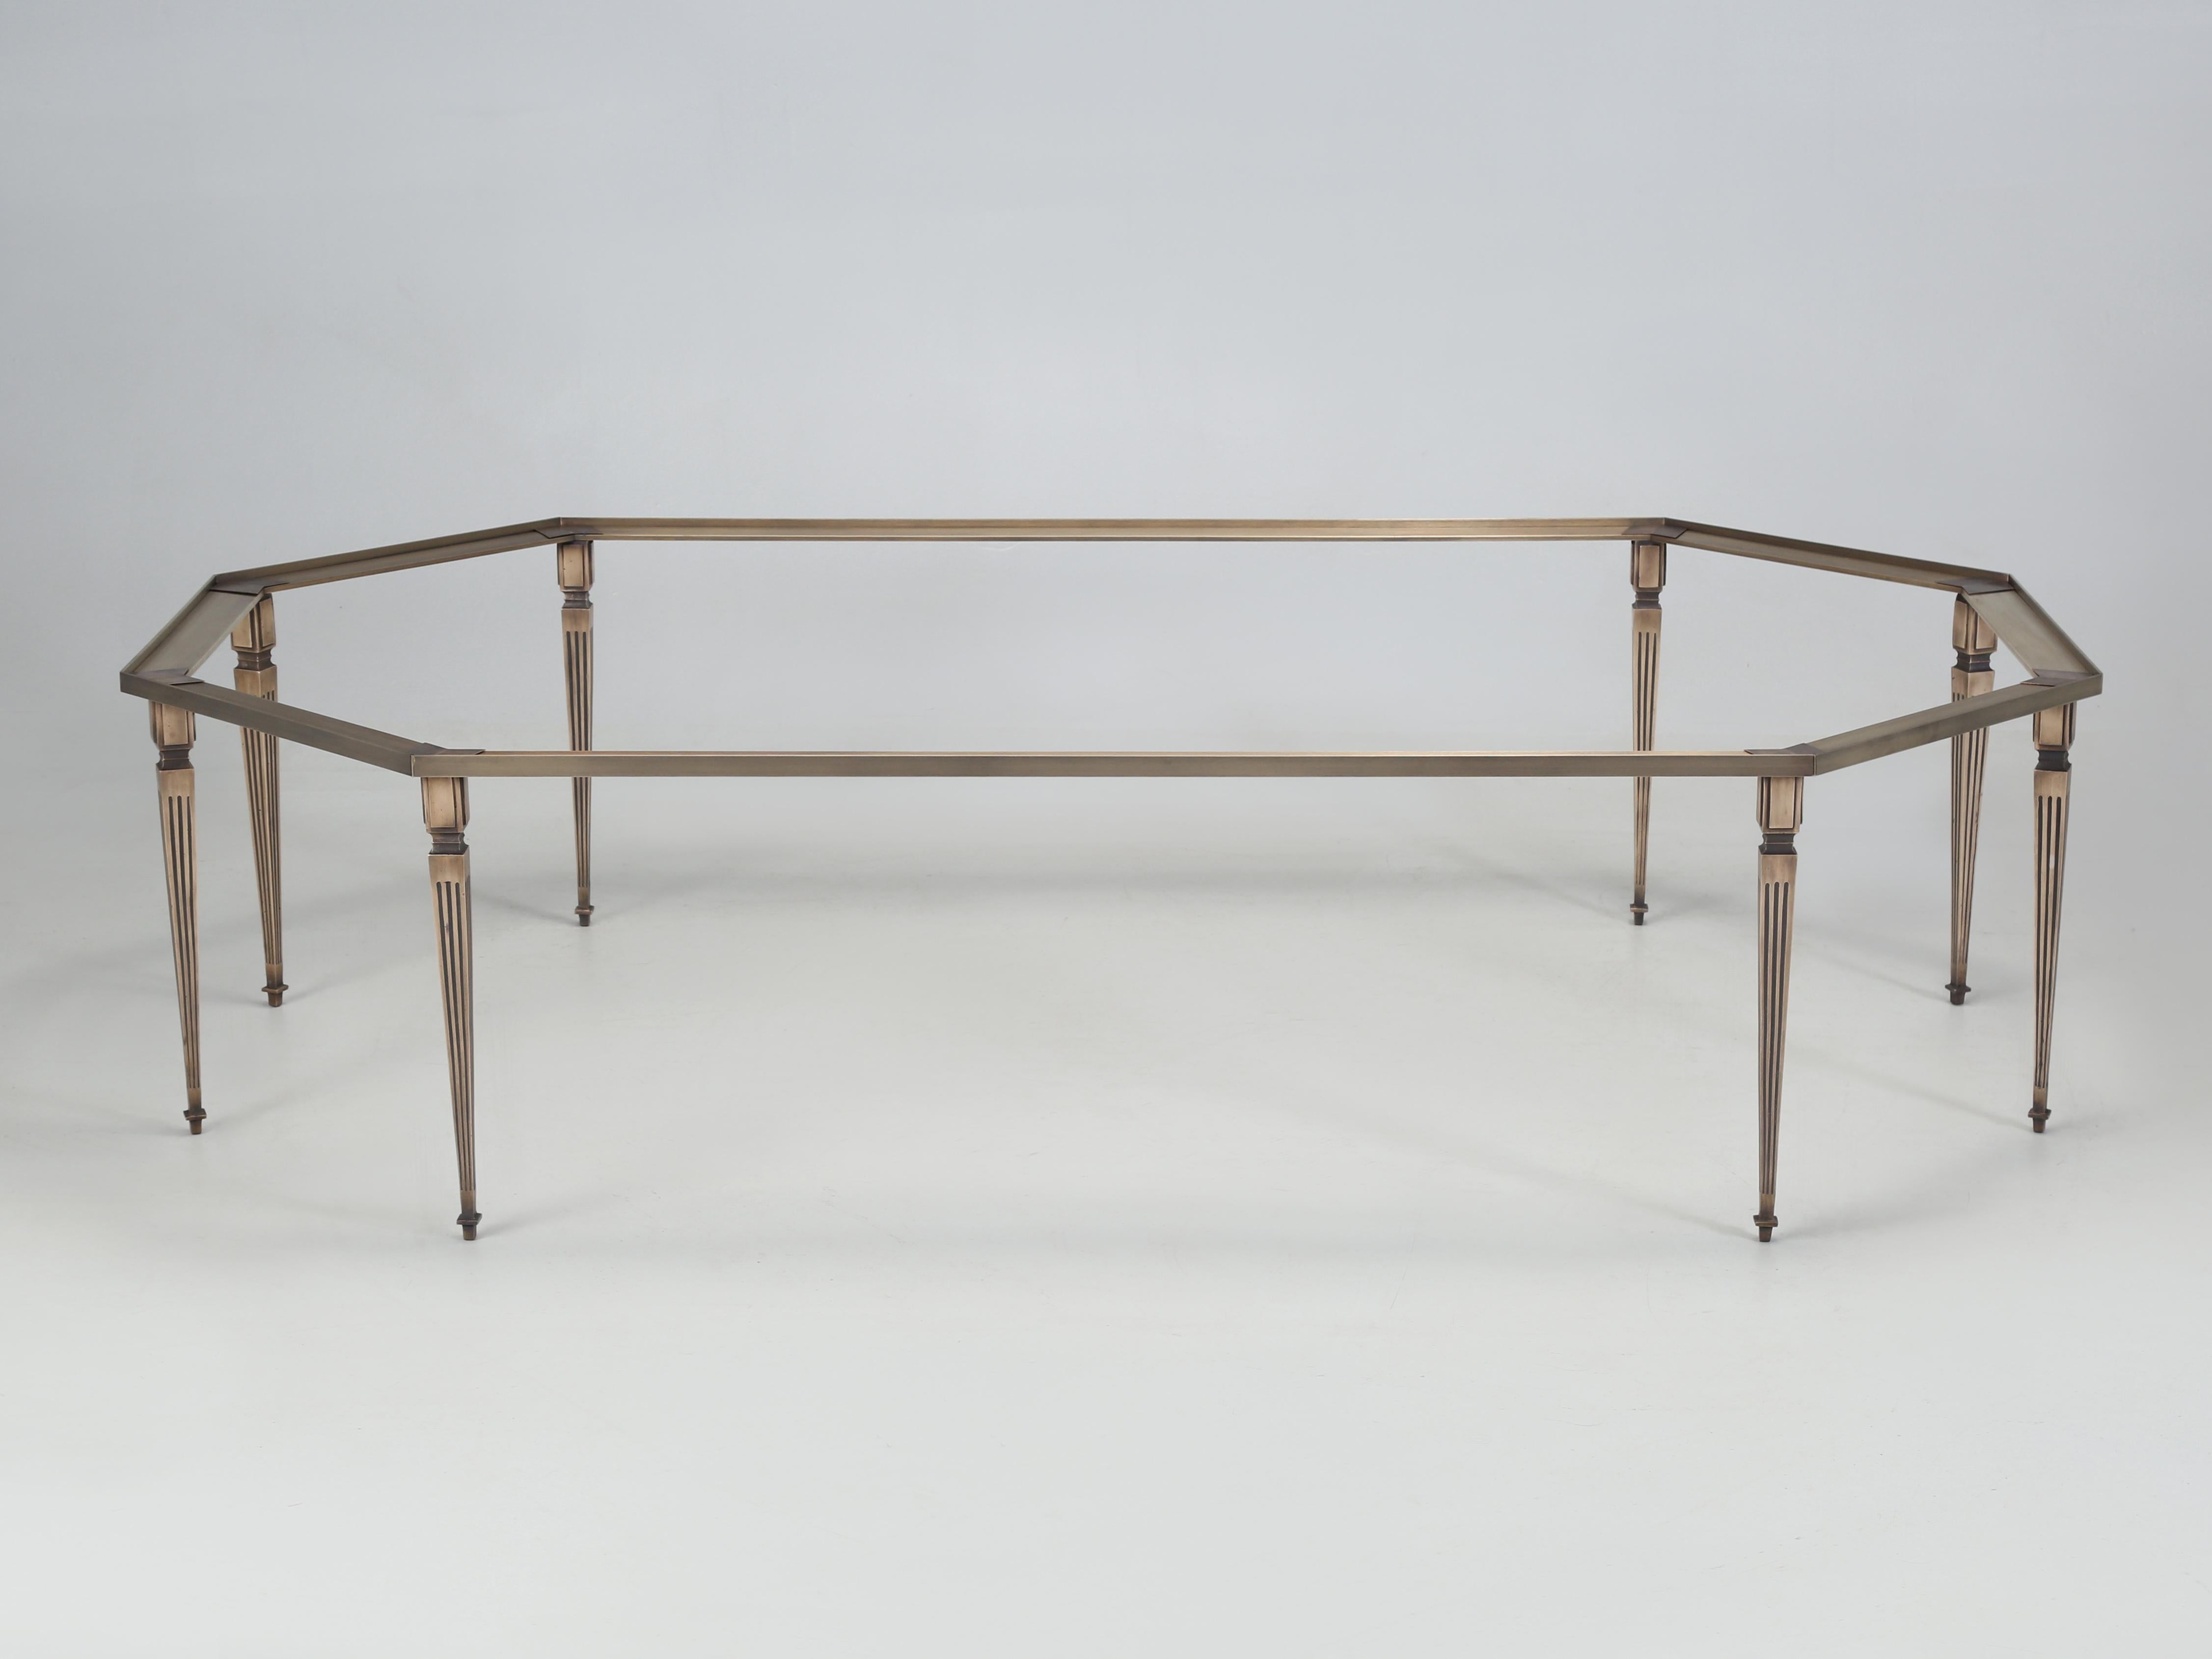 Table basse d'inspiration française de style Louis XVI fabriquée à Chicago par Old Plank. Notre table basse Louis XVI en bronze est disponible dans presque toutes les dimensions et dans la plupart des formes. La table basse Louis XVI a été conçue